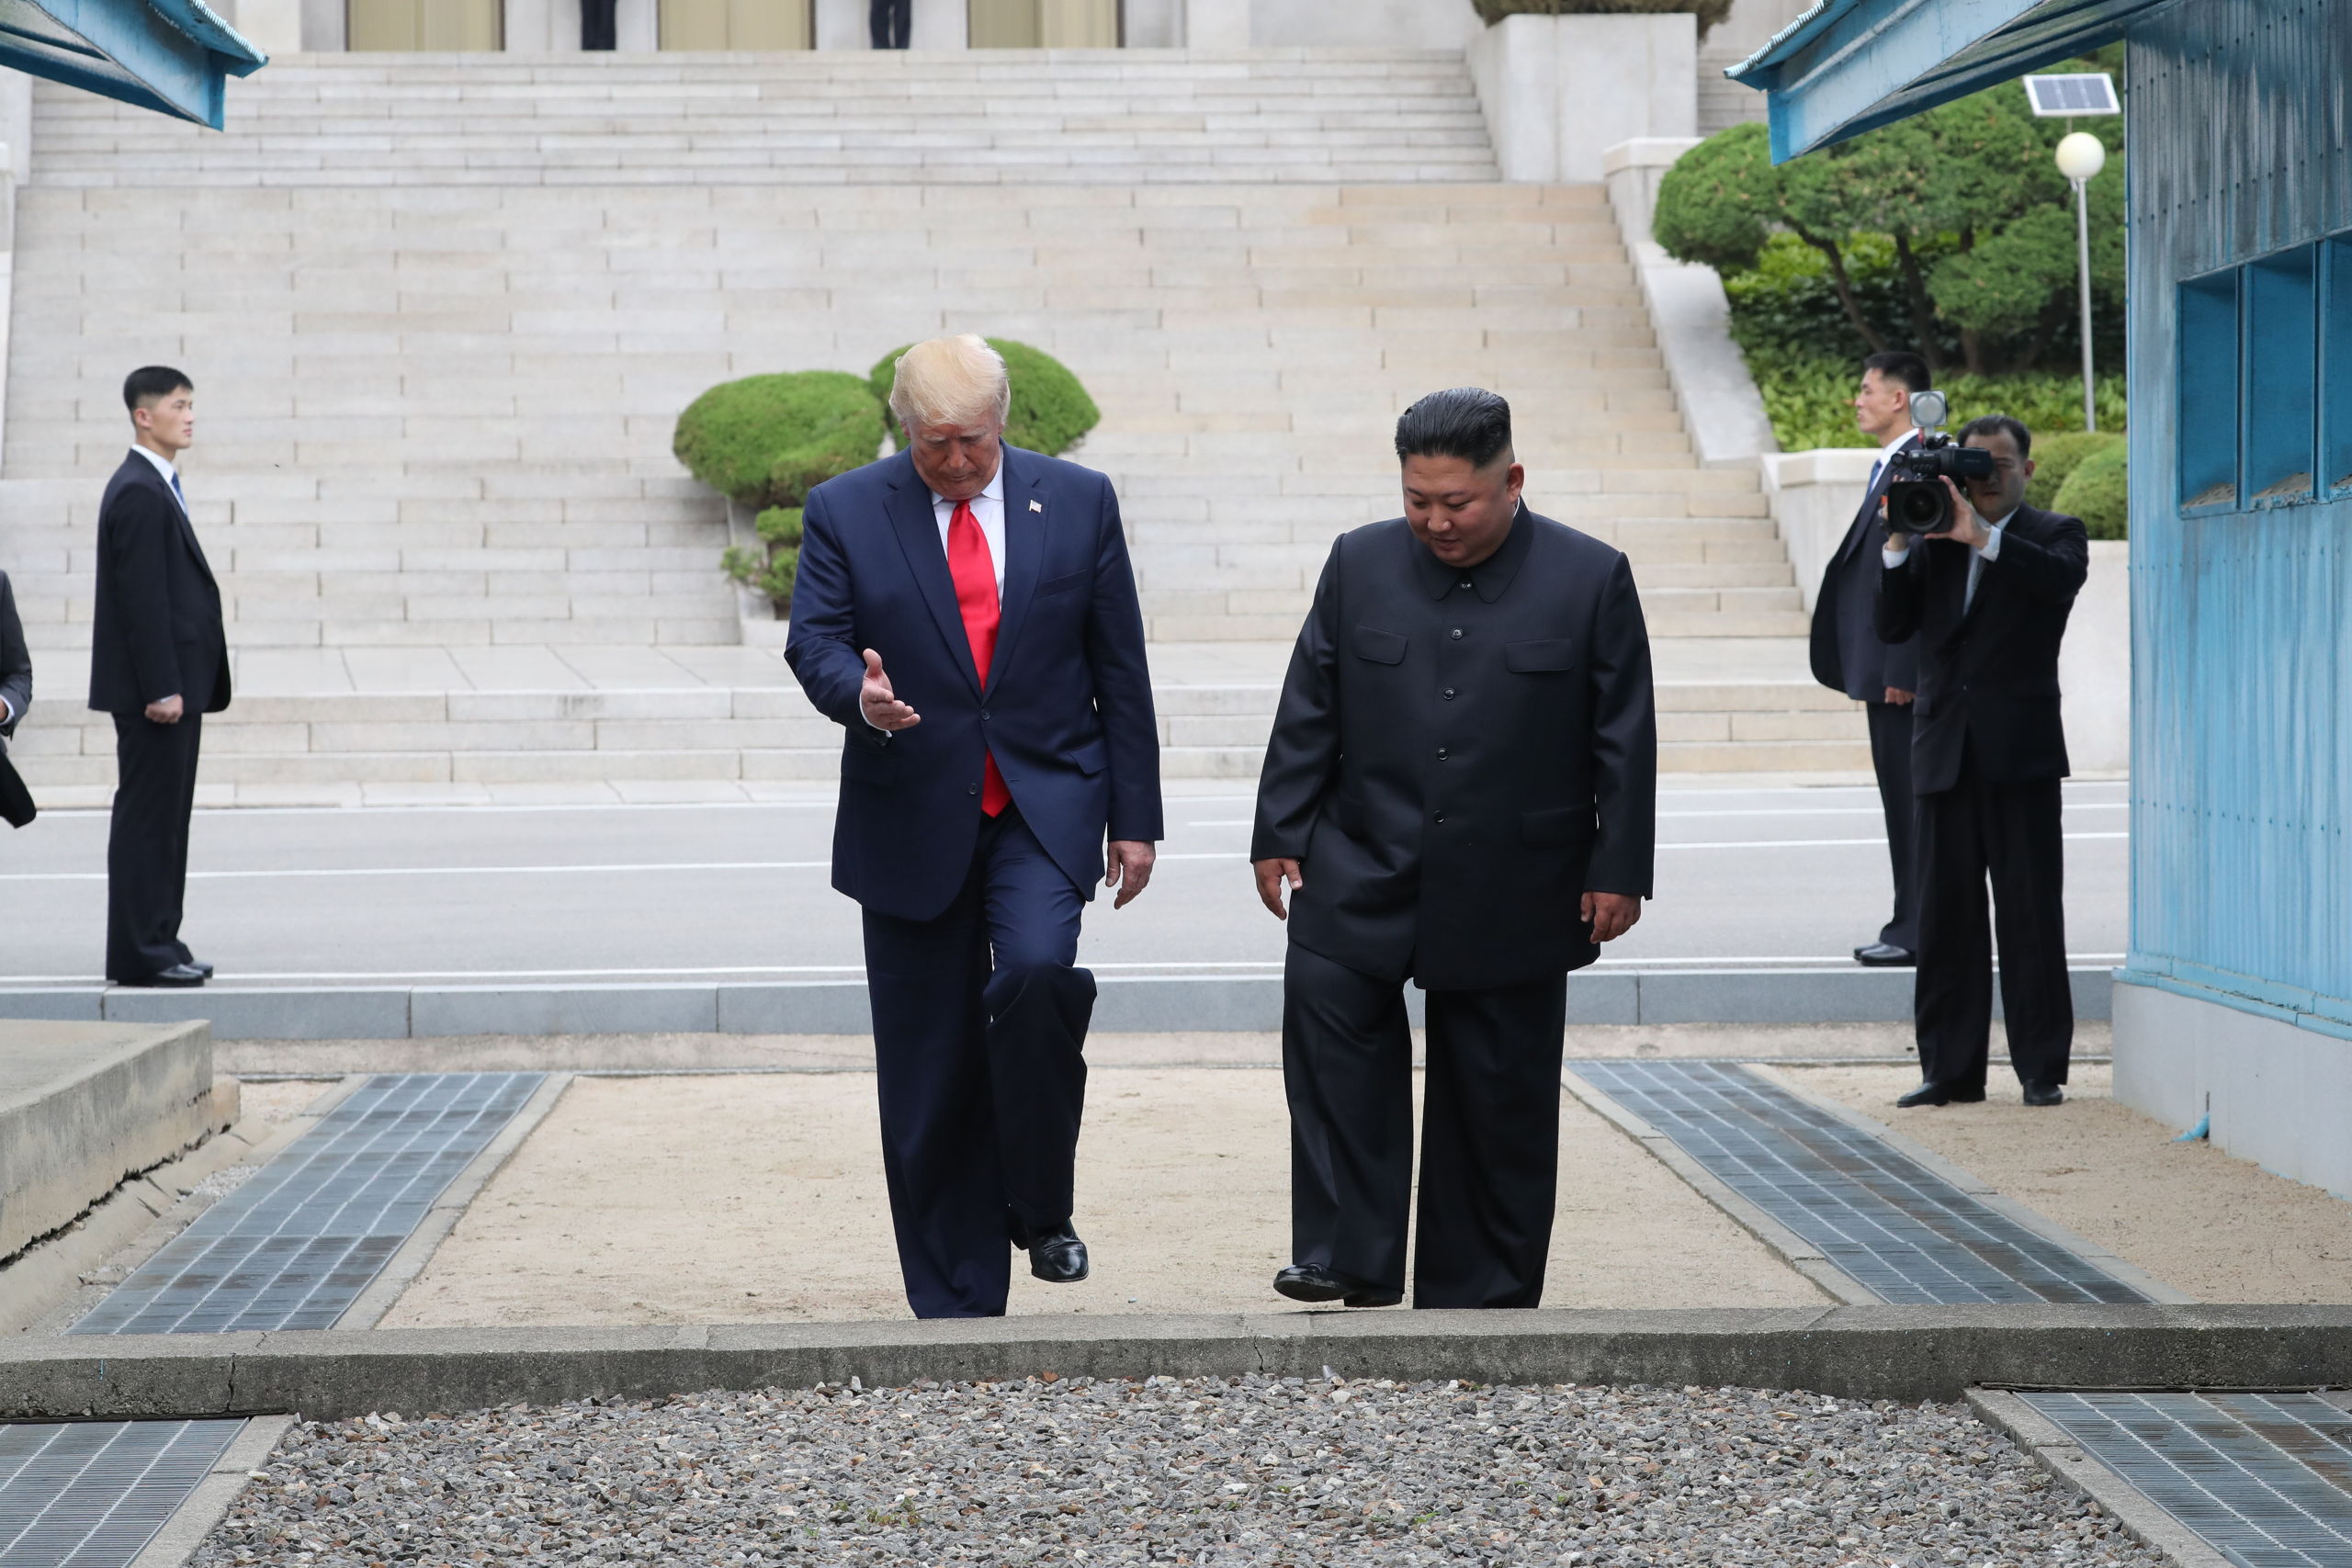 Amerikaanse president Donald J. Trump met Noord-Koreaanse leider Kim Jong-un bij de grens tussen de twee Korea's op 30 juni 2019. De ontmoeting was deel van Trumps poging om de verder relatie tussen de twee landen te normaliseren.